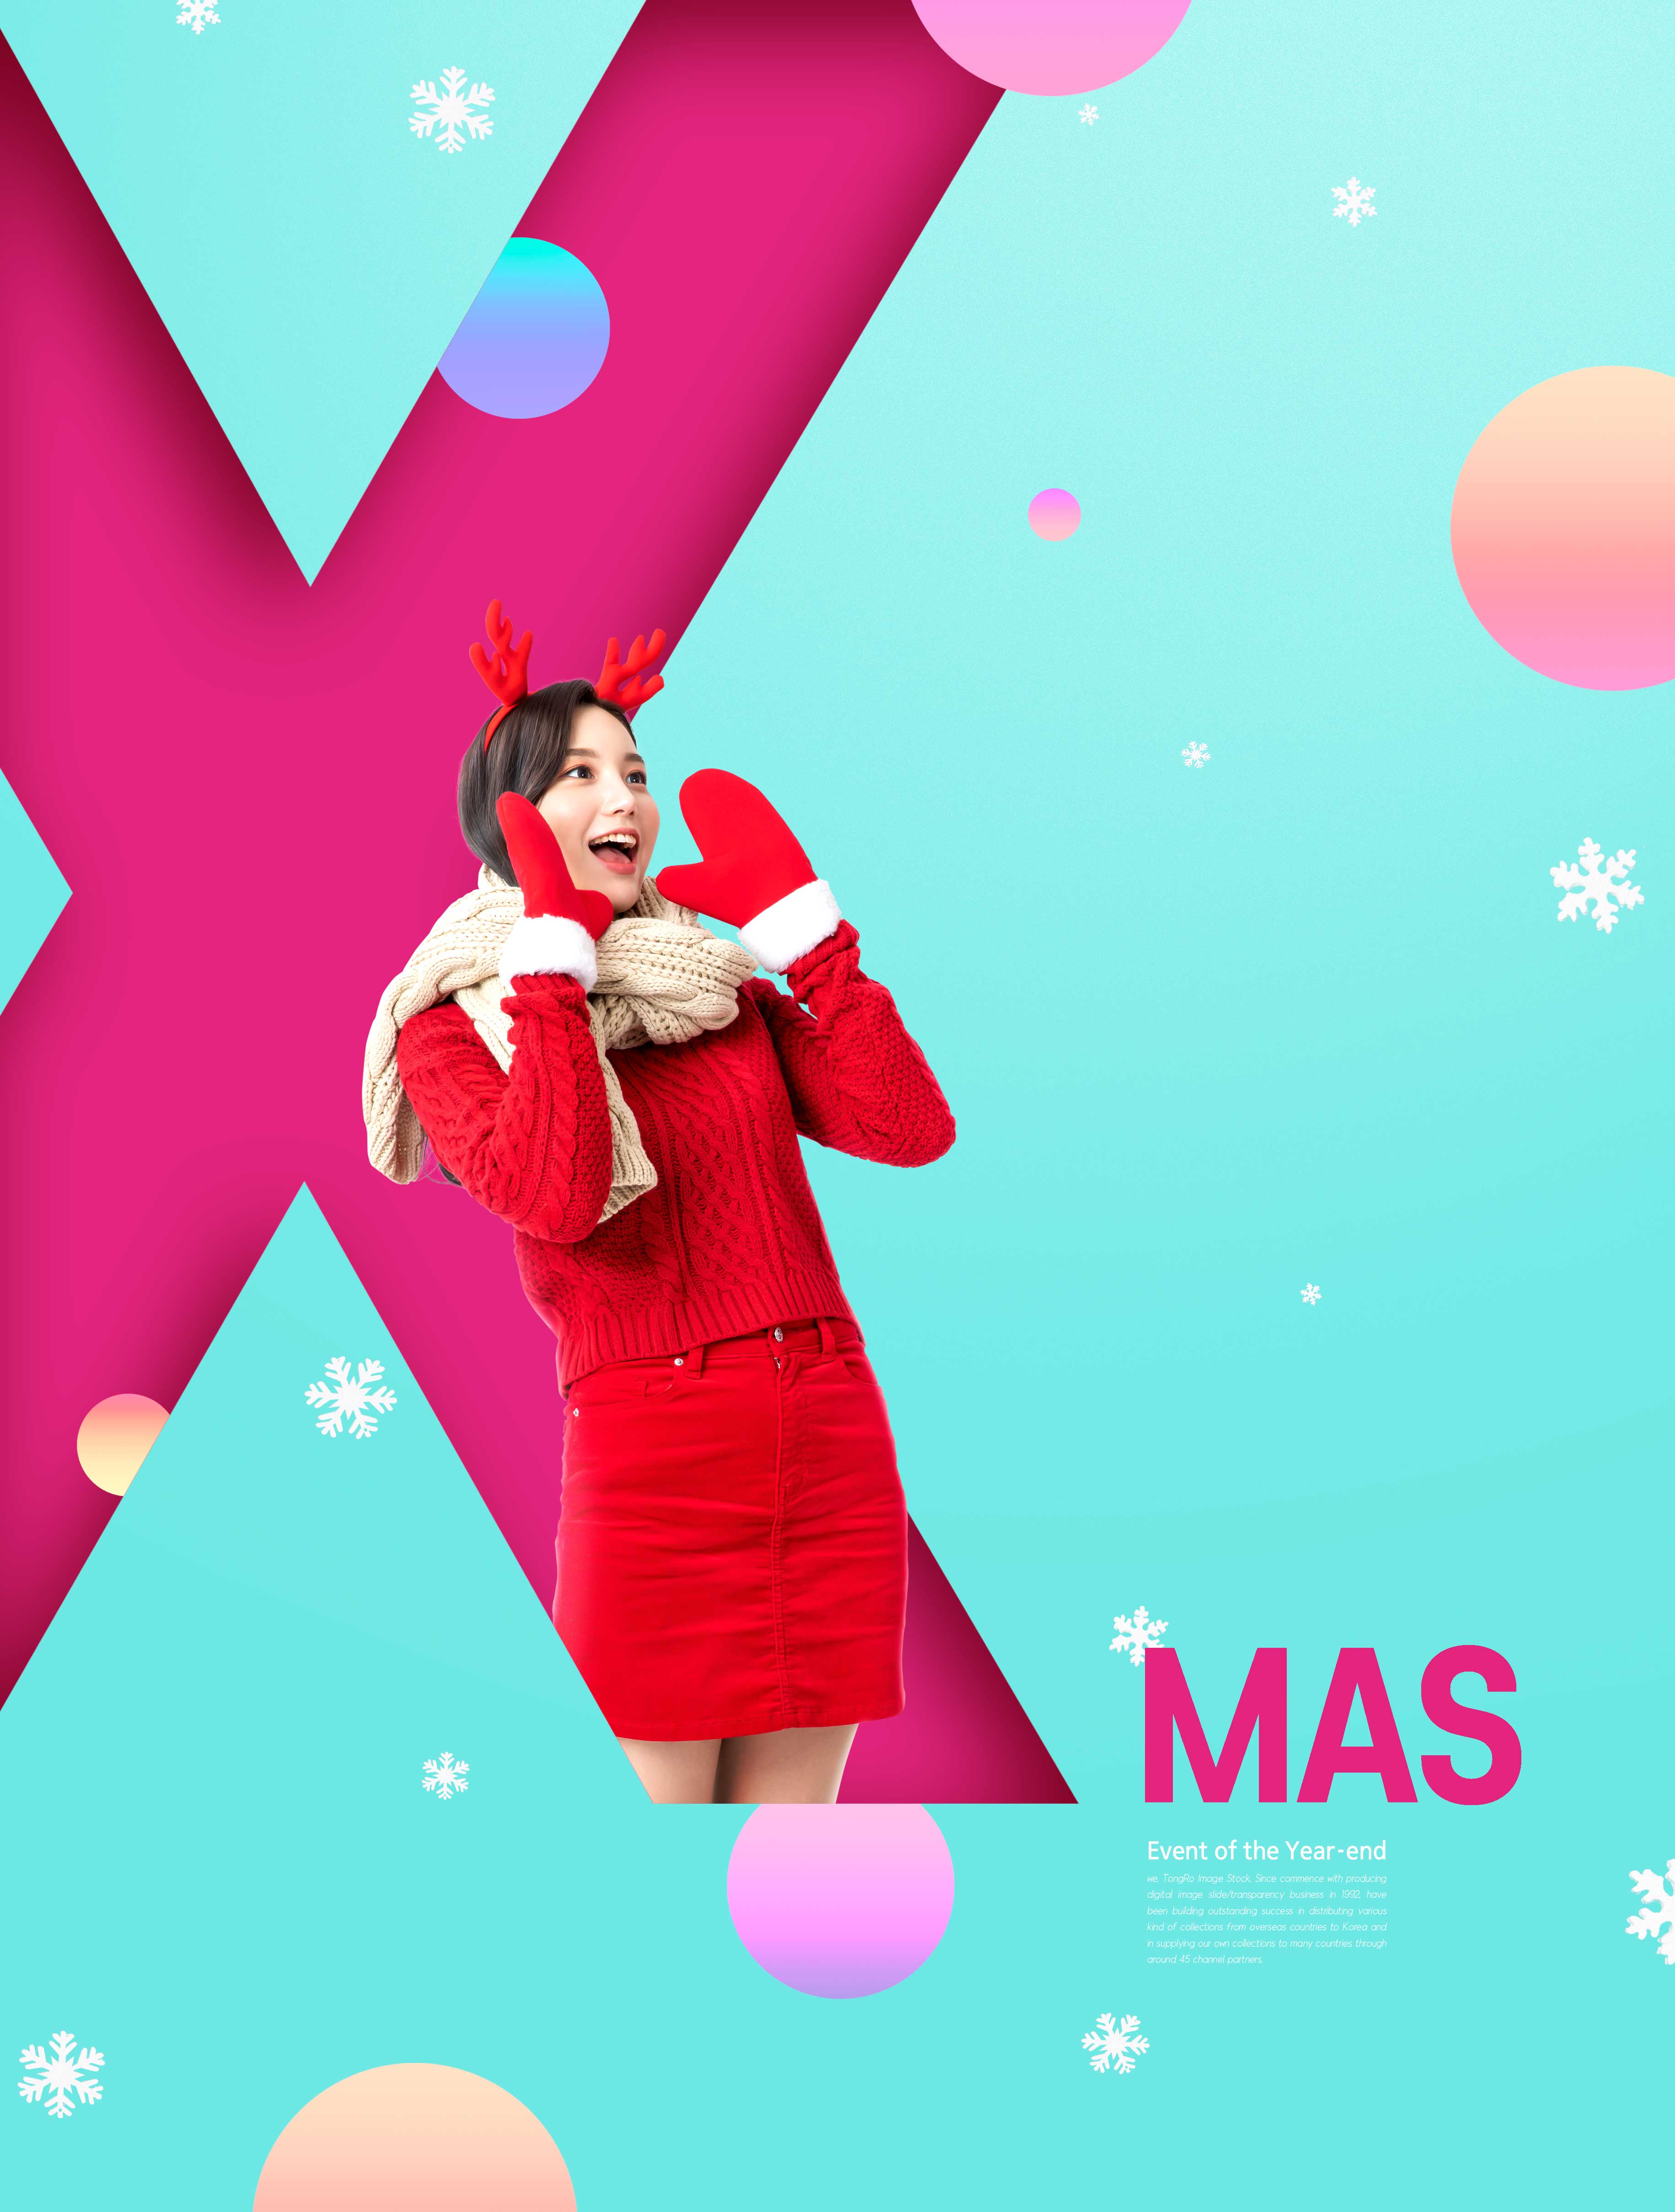 促销广告圣诞服装海报设计韩国素材设计素材模板